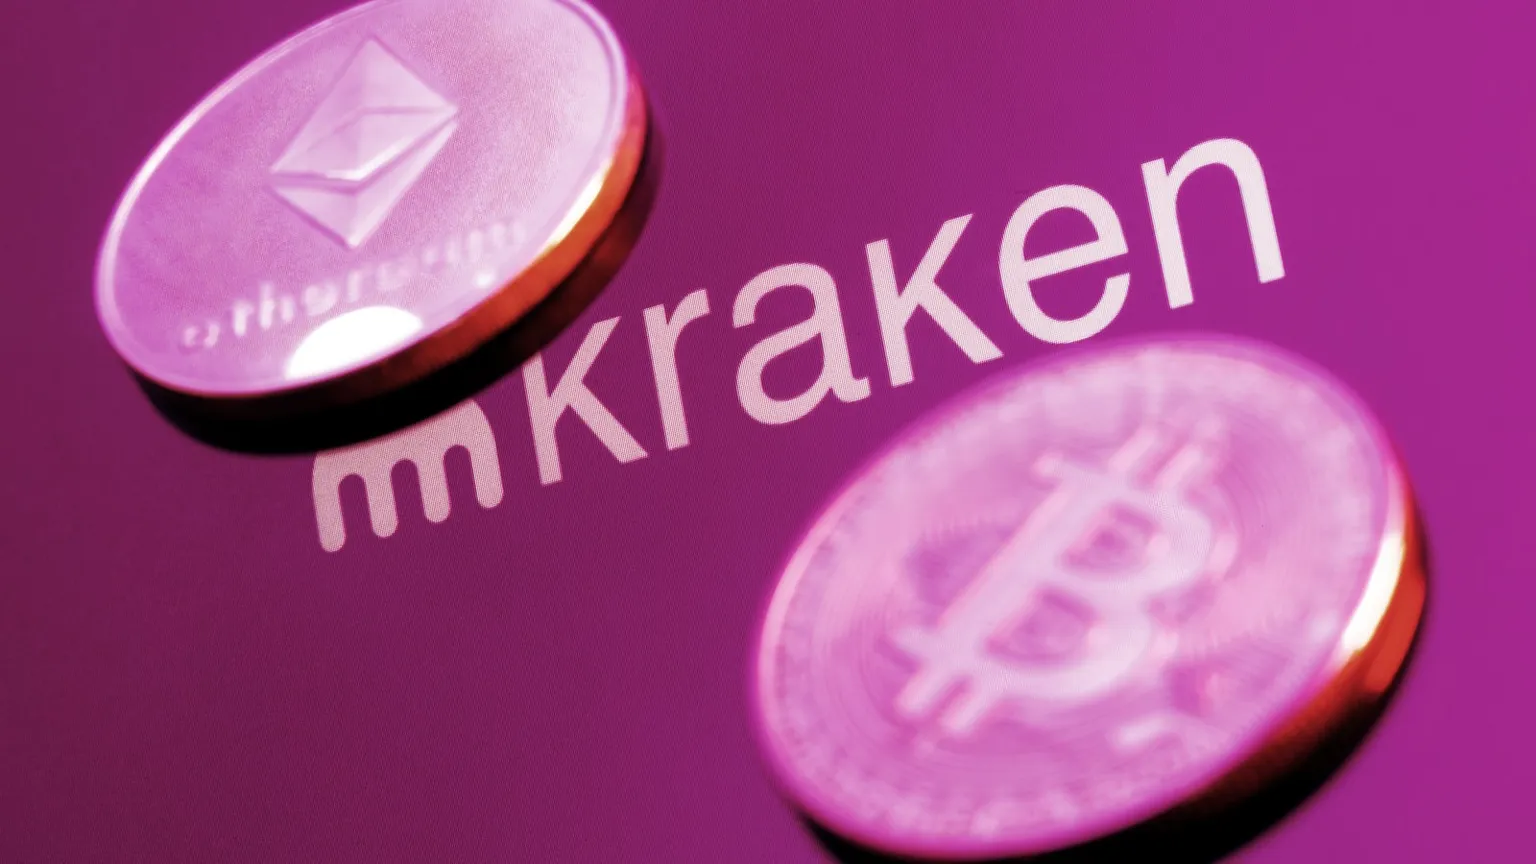 Kraken es una plataforma de intercambio de criptomonedas dirigida por Jesse Powell. Imagen: Shutterstock